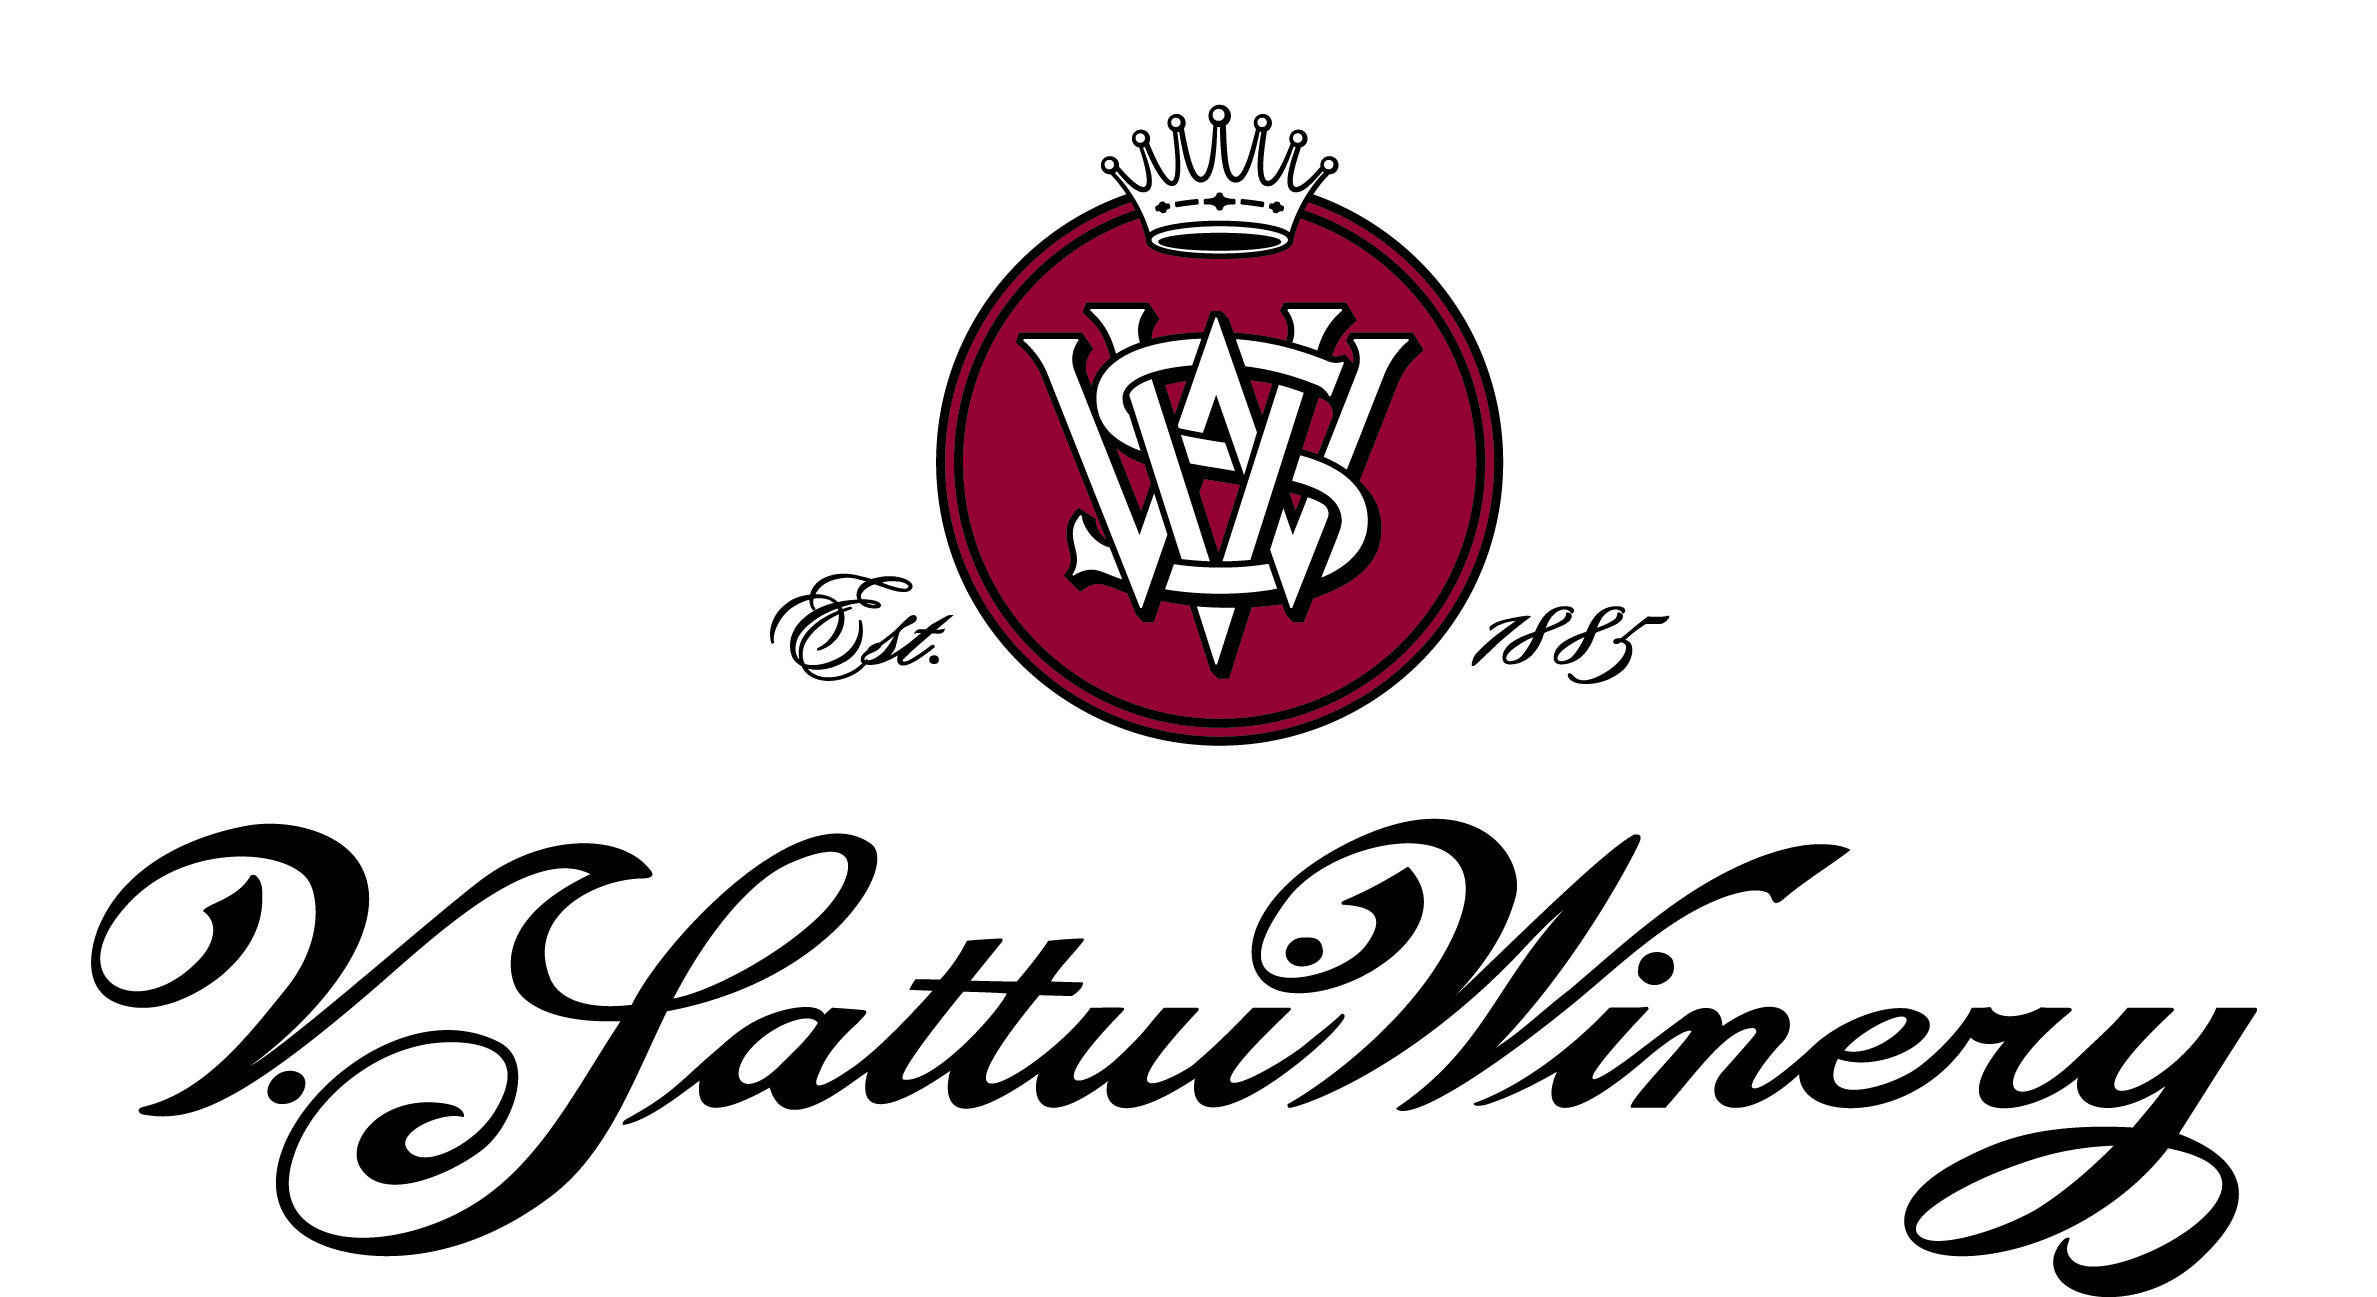 Winery Logo - V. Sattui Winery: Great wine from Napa Valley